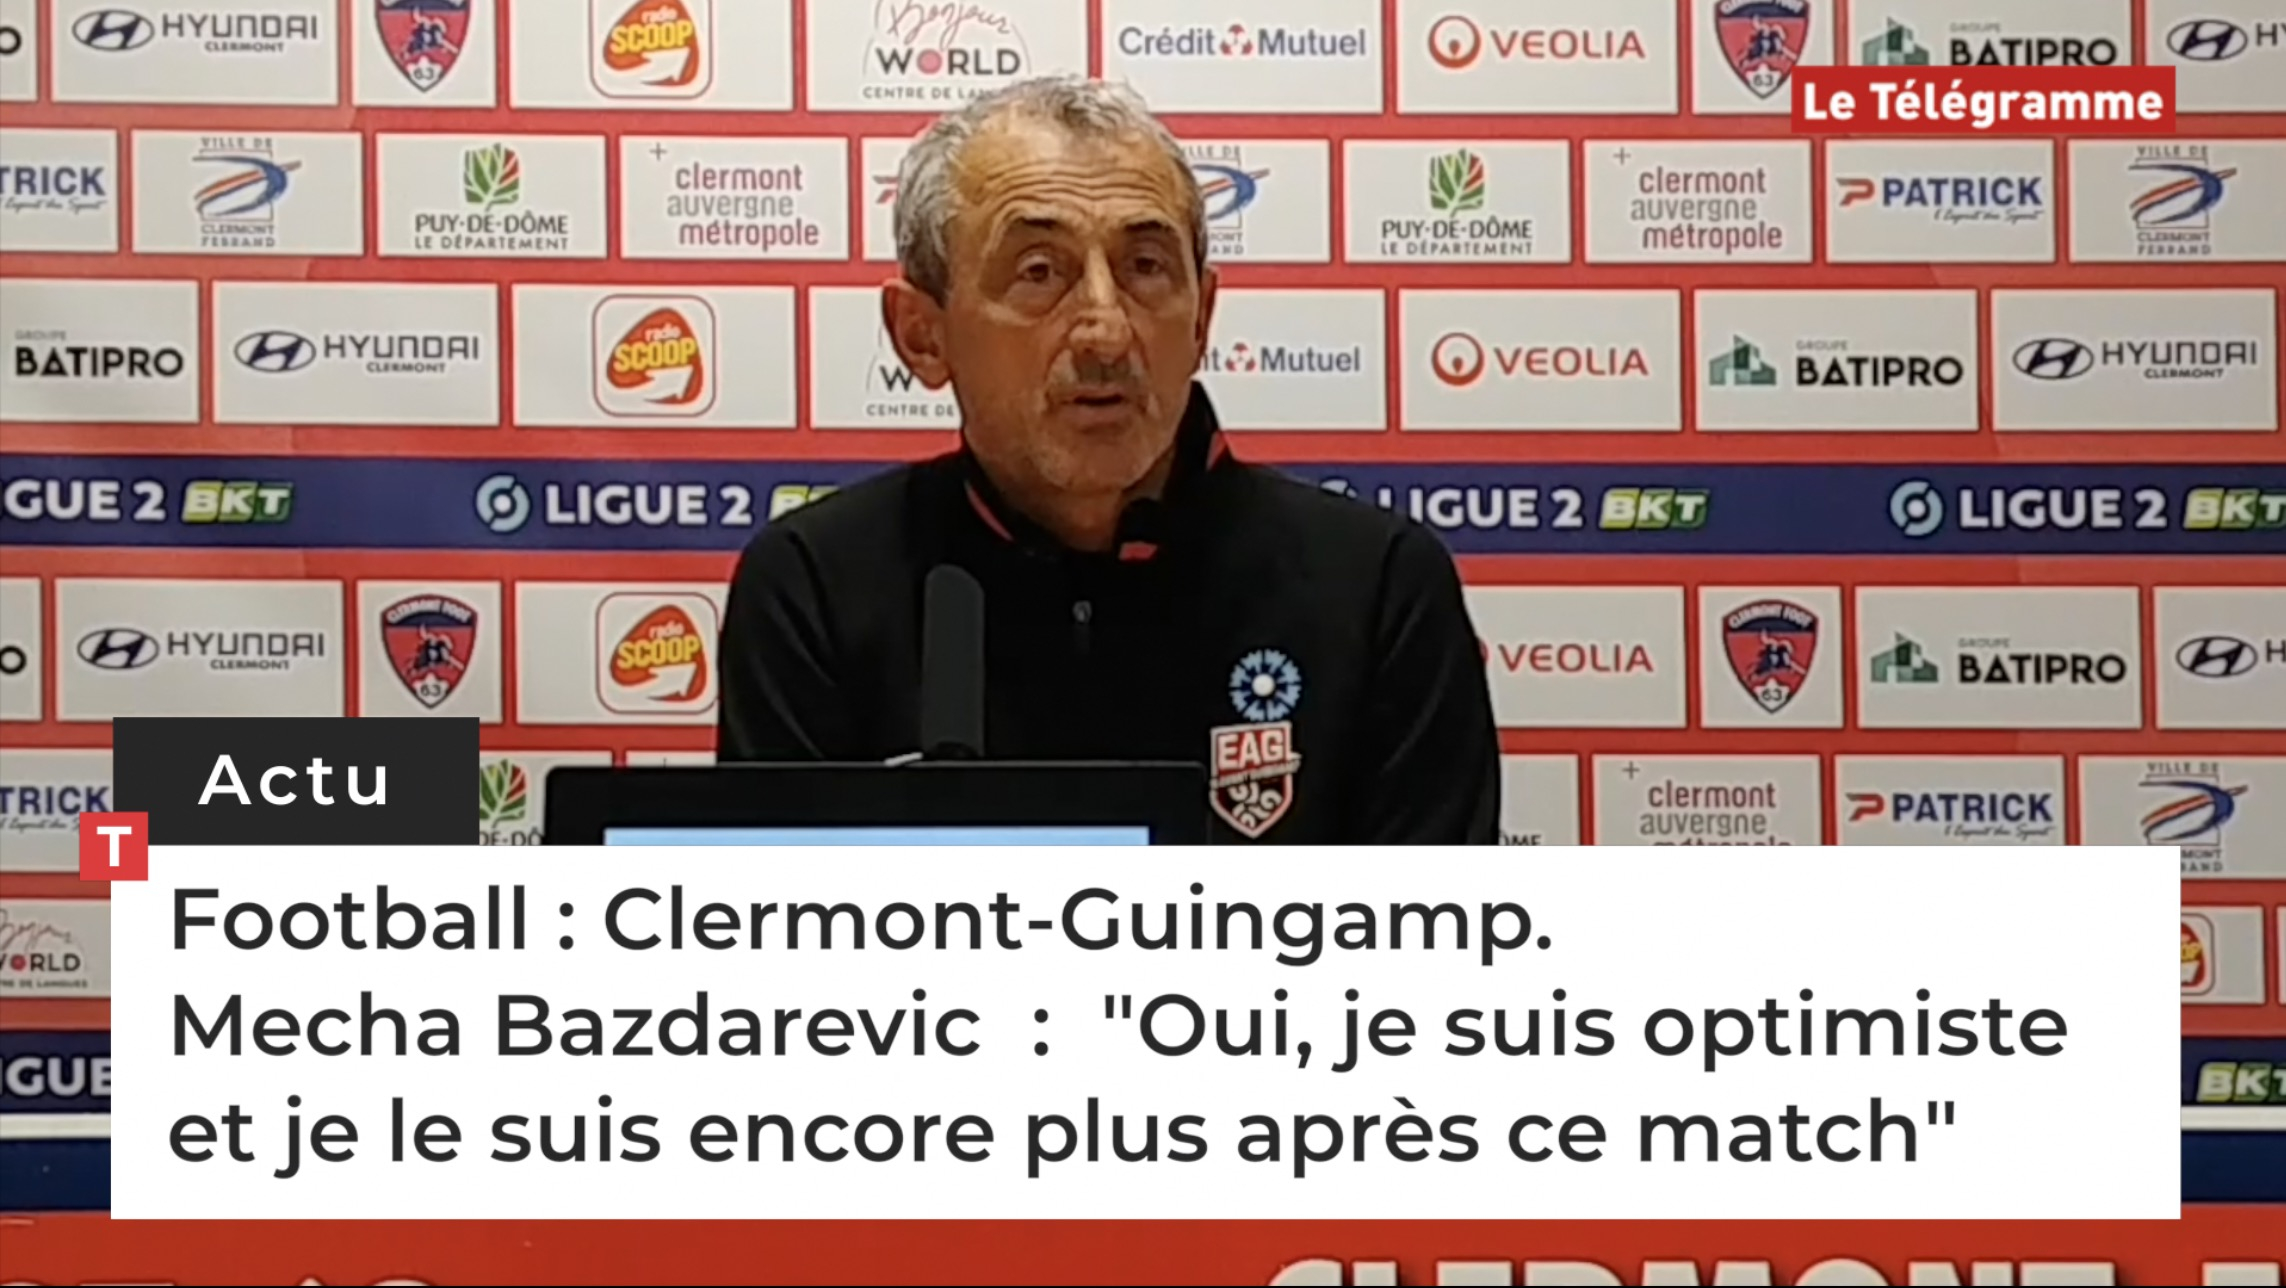 Football : Clermont-Guingamp. Mecha Bazdarevic  :  "Oui, je suis optimiste et je le suis encore plus après ce match" (Le Télégramme)